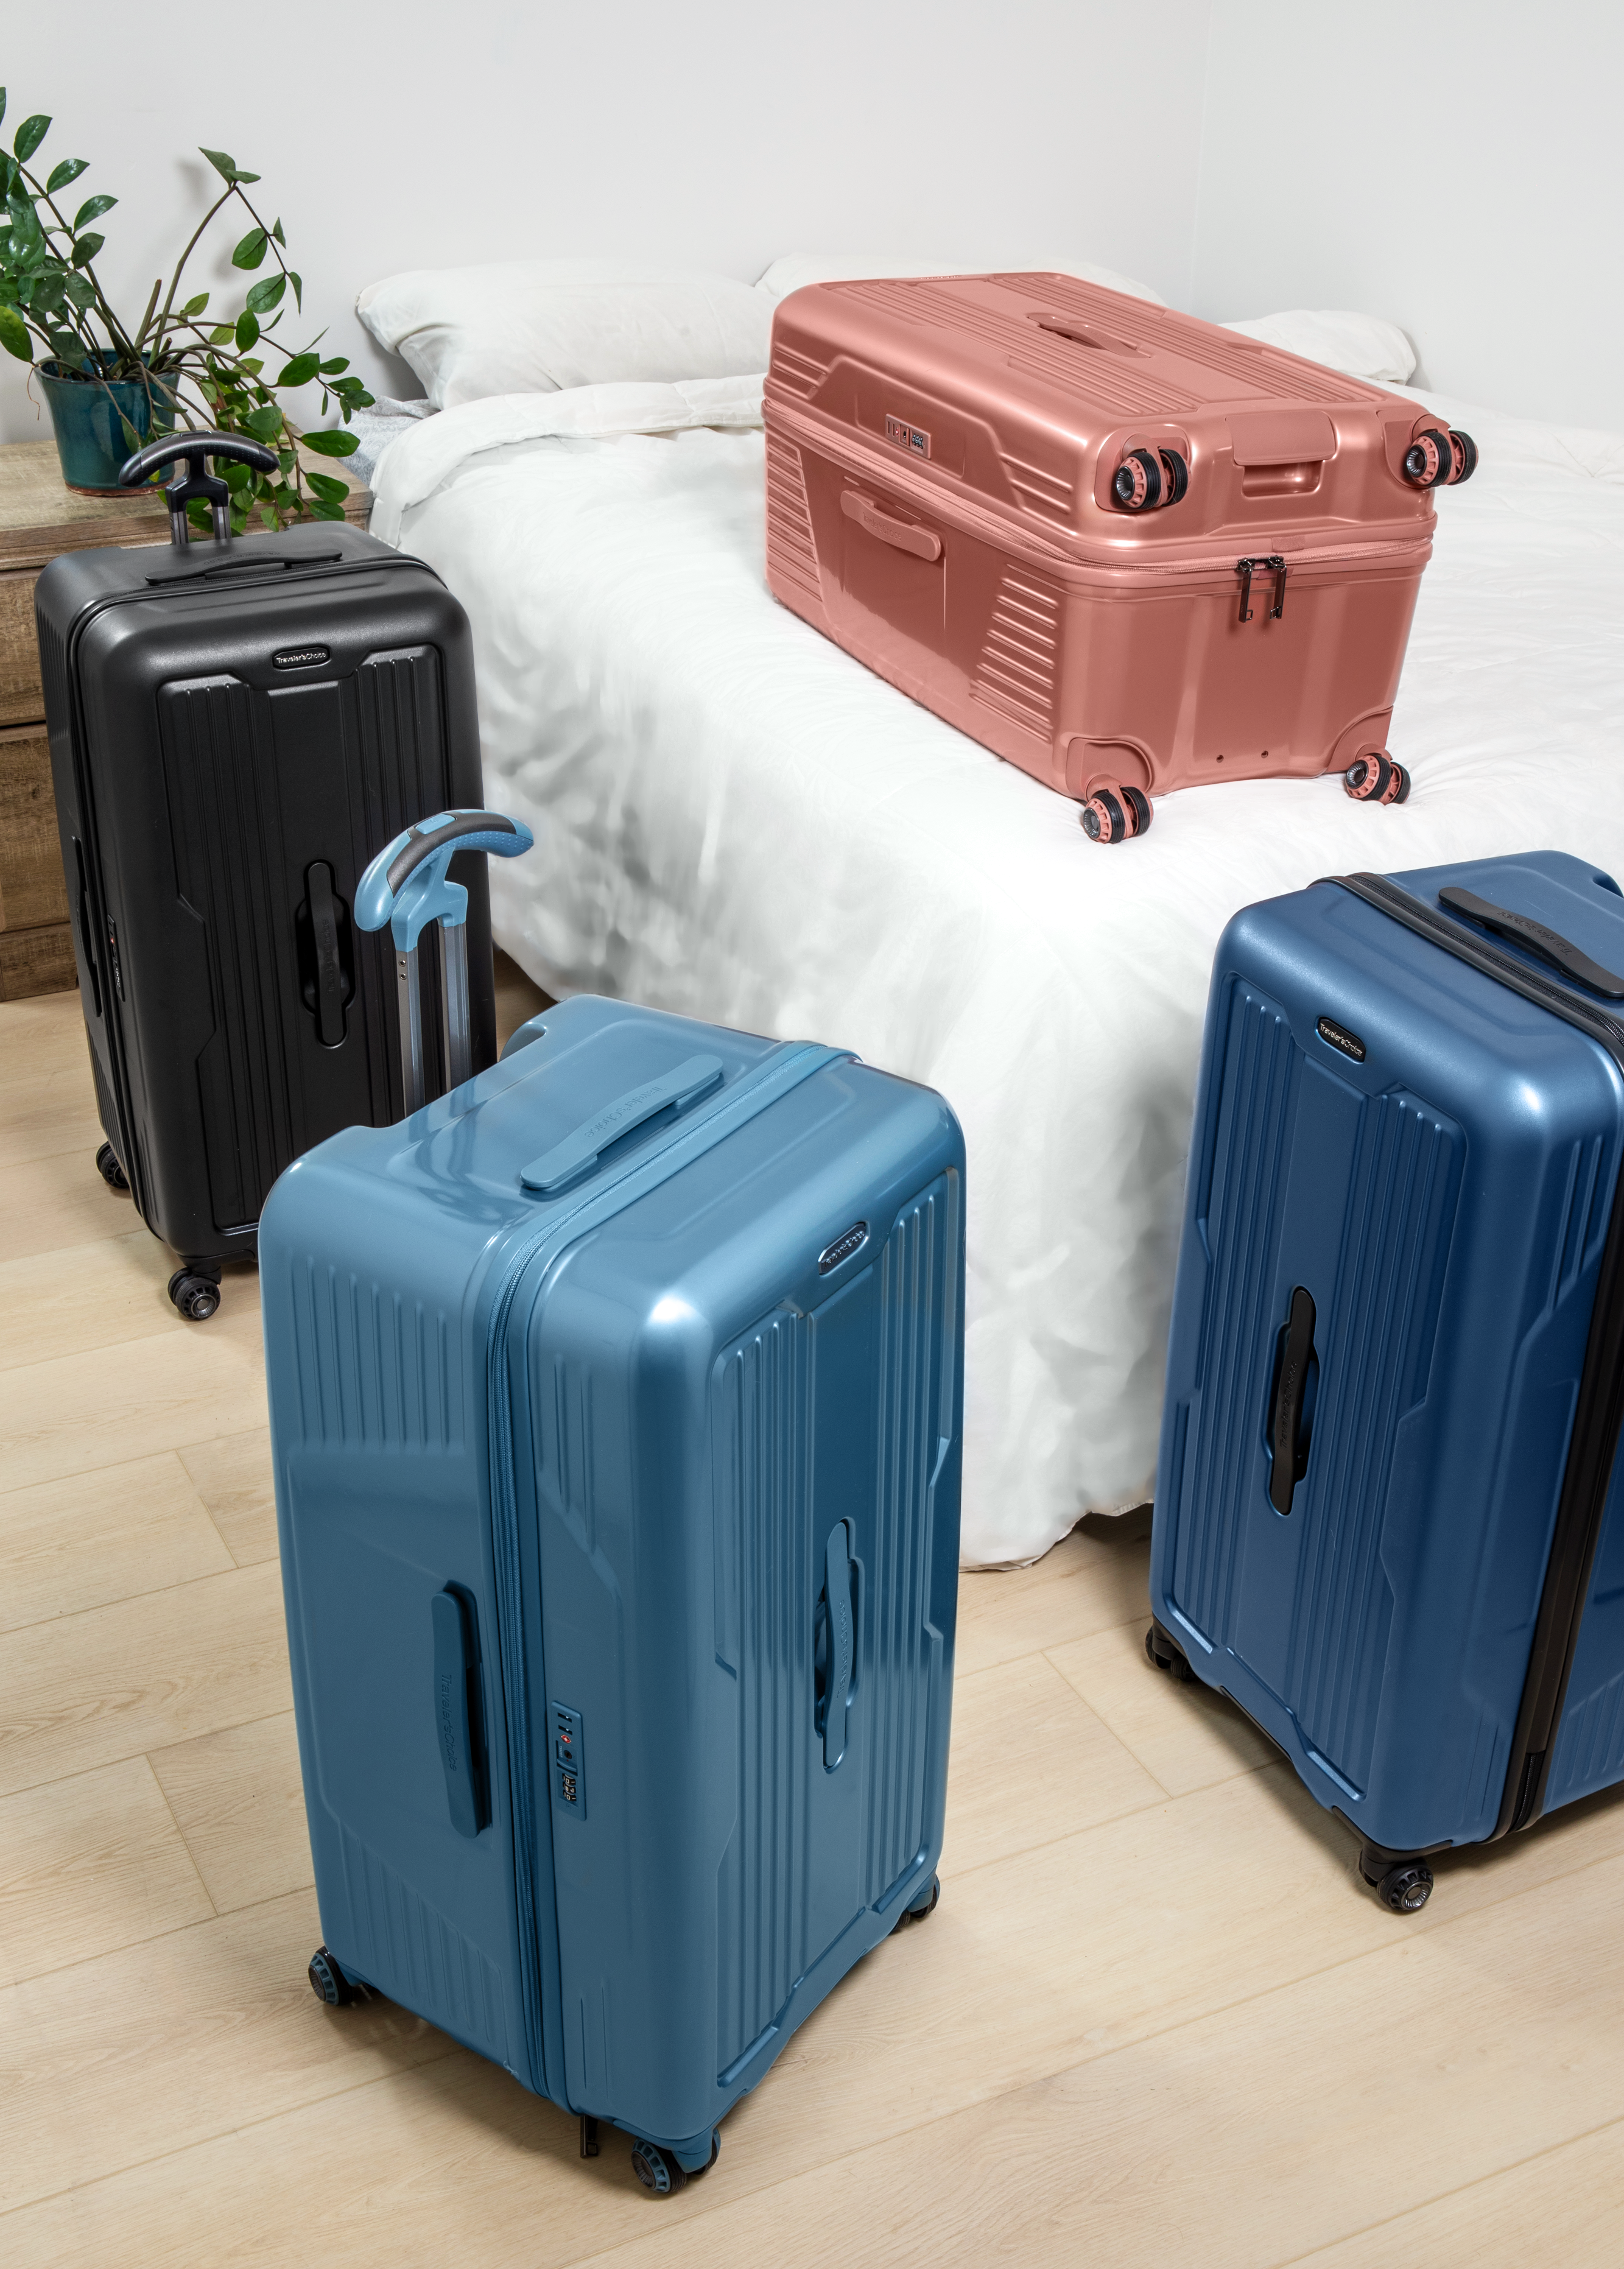 Large Trunk Style Luggage – Traveler's Choice